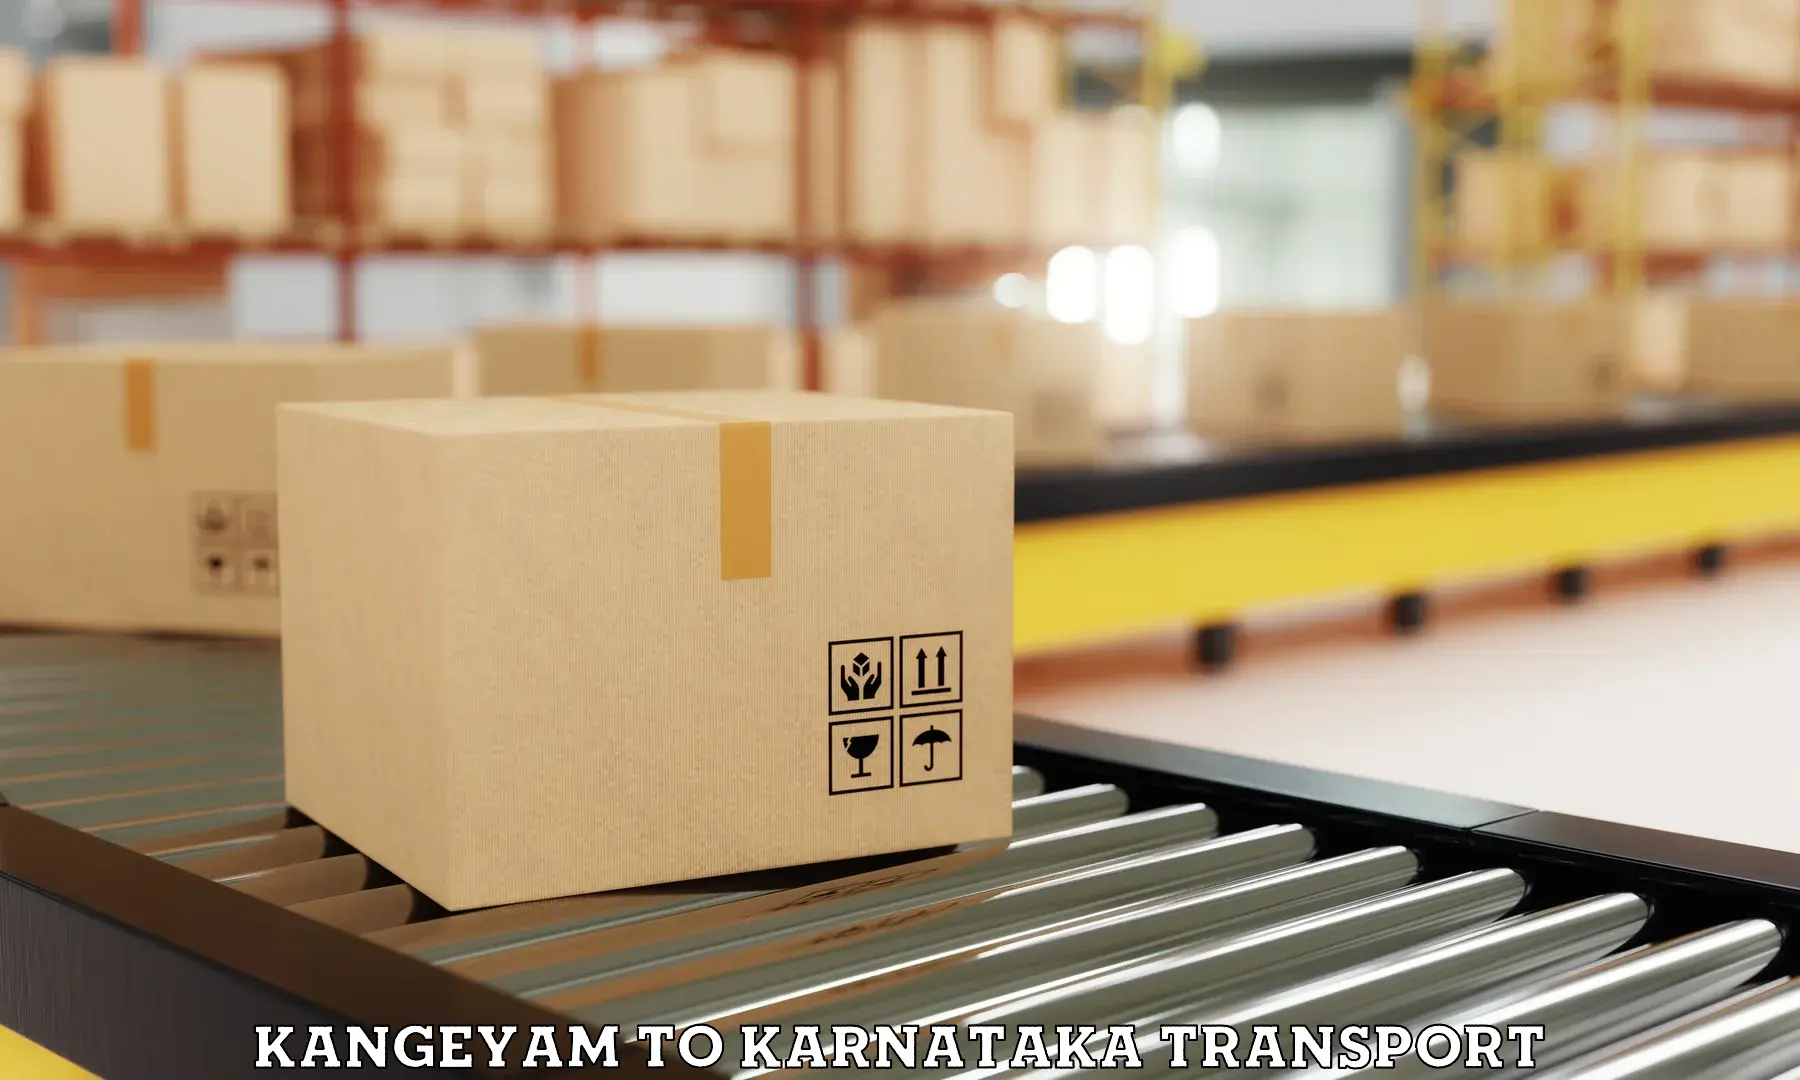 Air cargo transport services Kangeyam to Karnataka